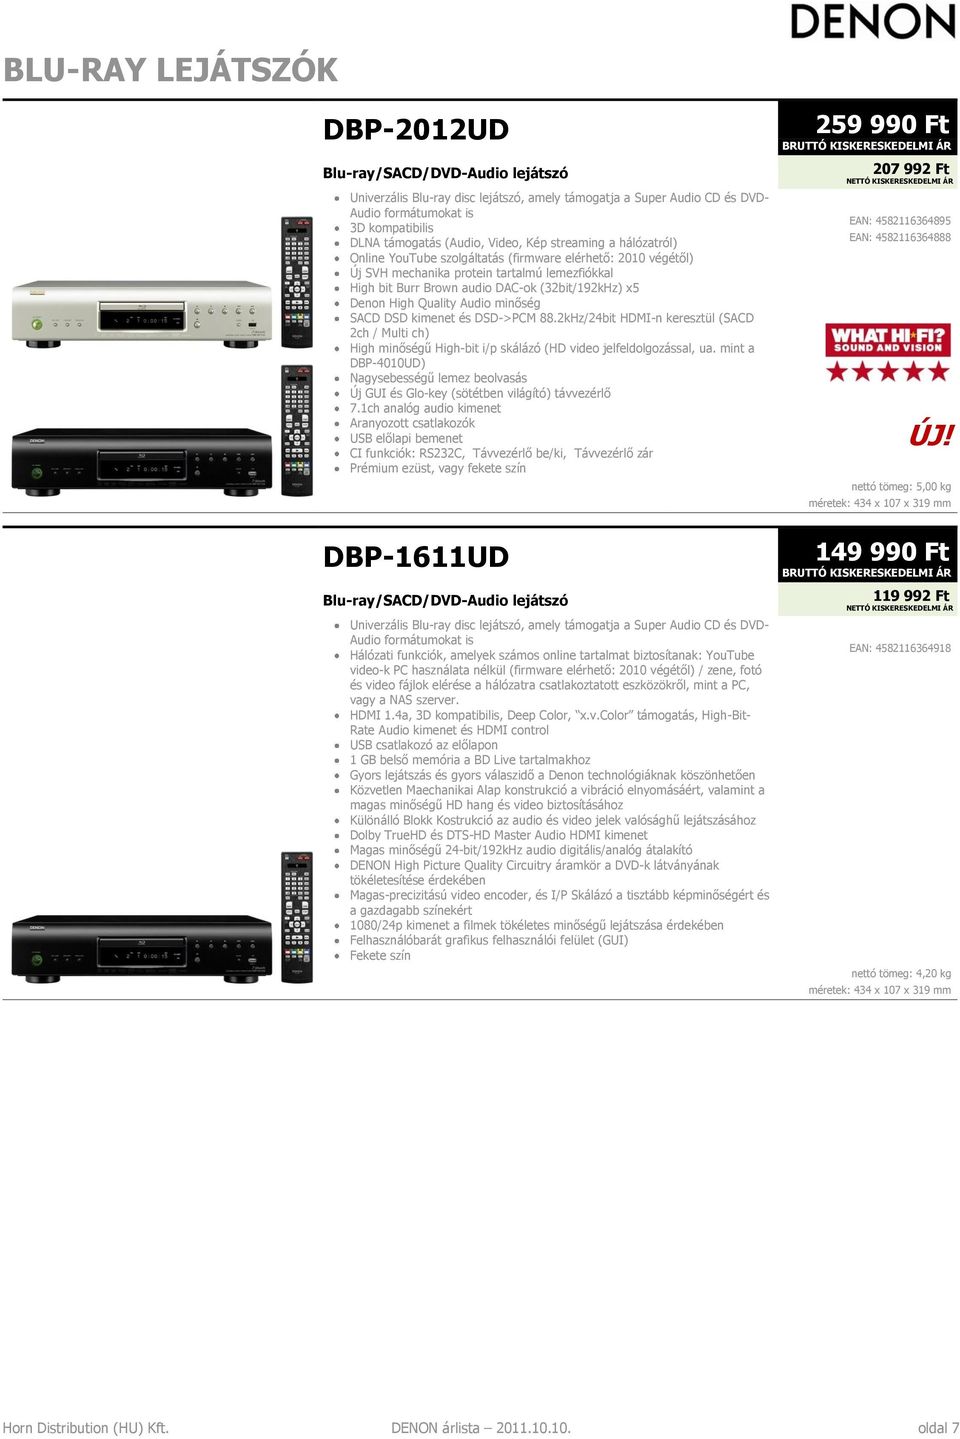 Denon High Quality Audio minőség SACD DSD kimenet és DSD->PCM 88.2kHz/24bit HDMI-n keresztül (SACD 2ch / Multi ch) High minőségű High-bit i/p skálázó (HD video jelfeldolgozással, ua.